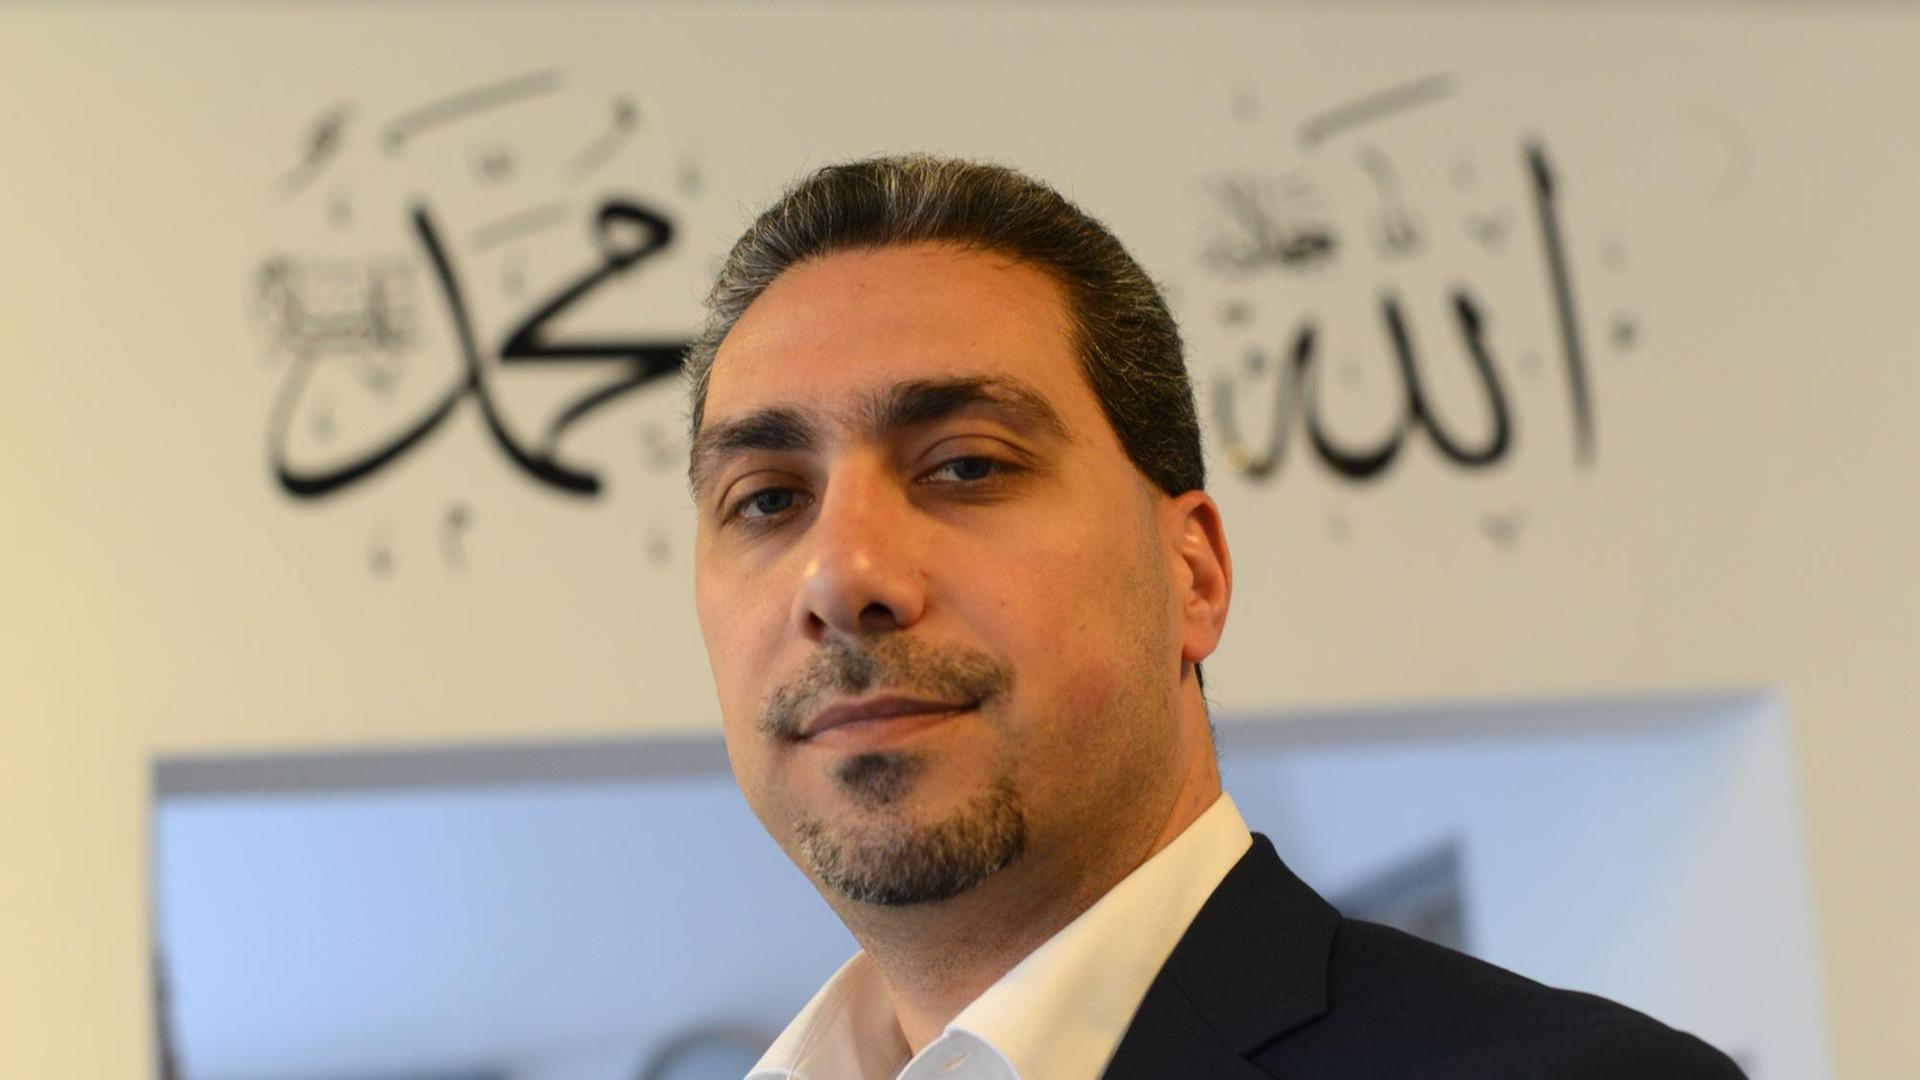 Sadiqu Al-Mousllie im schwarzen Sakko und weißem Hemd vor einem Türeingang mit arabischen Schriftzügen. Er blickt in die Kamera.